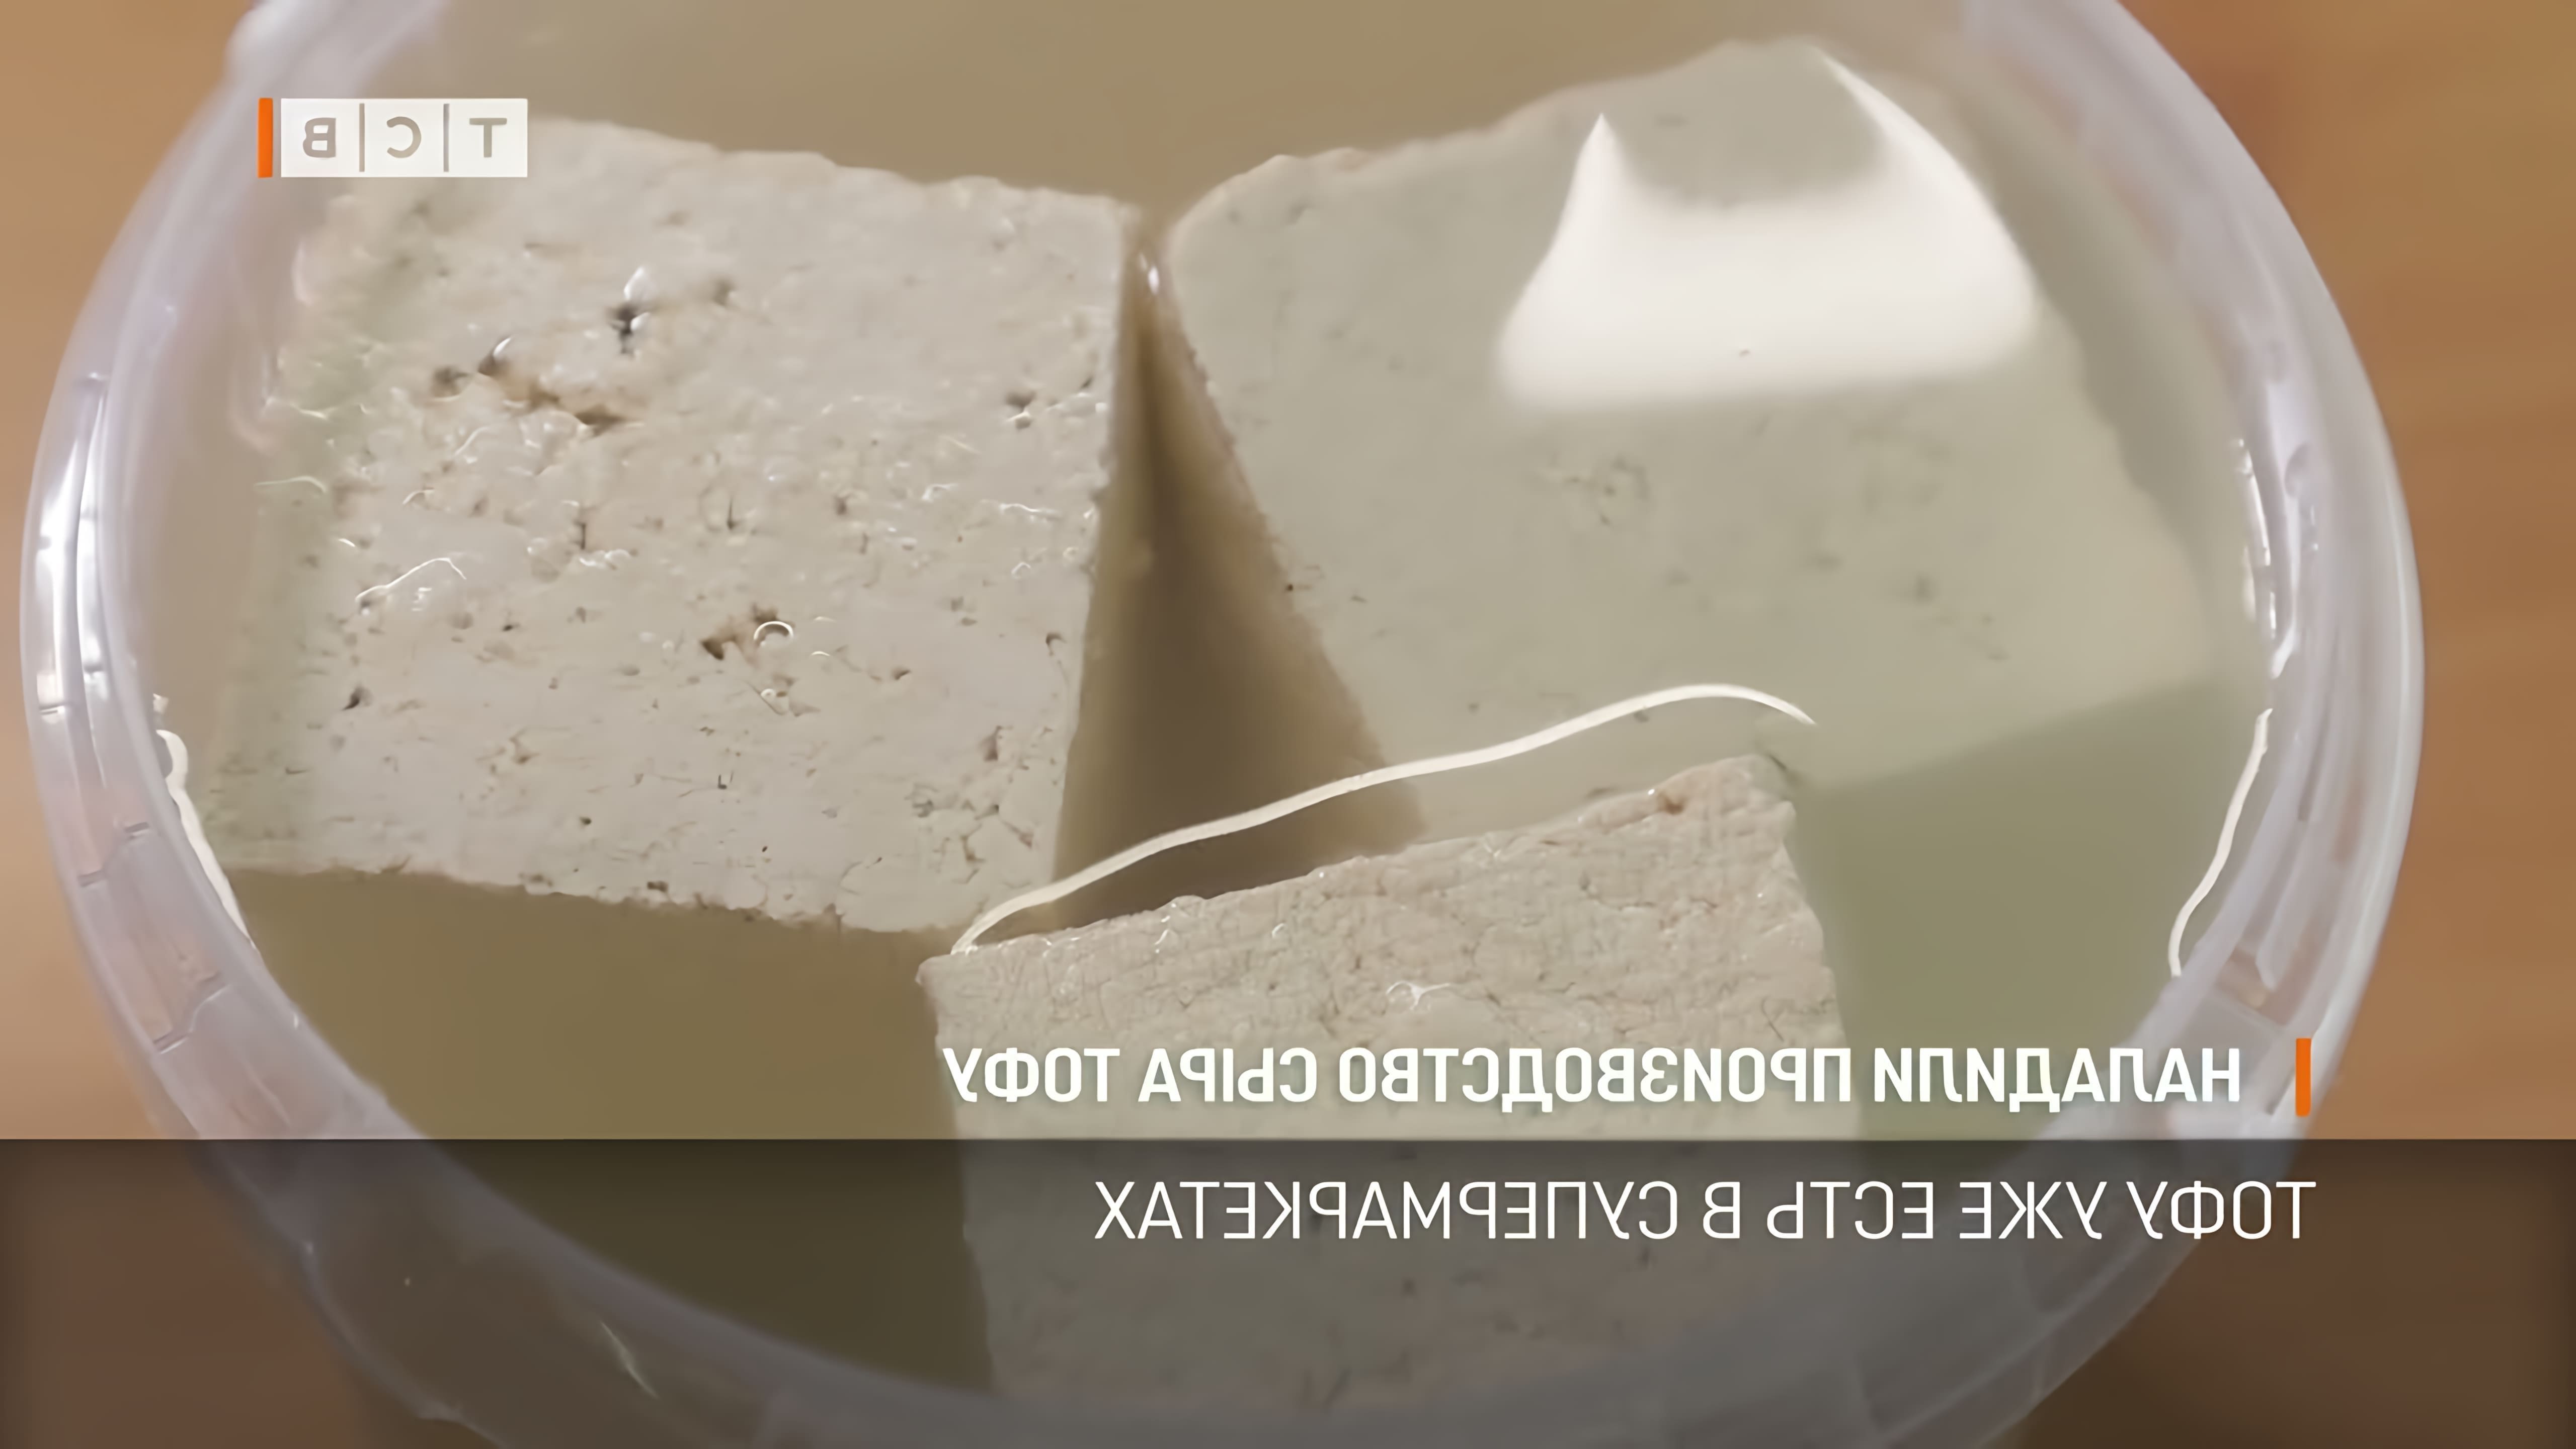 Бендерский мясокомбинат начал производство сыра тофу, который ценится за свои полезные качества и диетические свойства